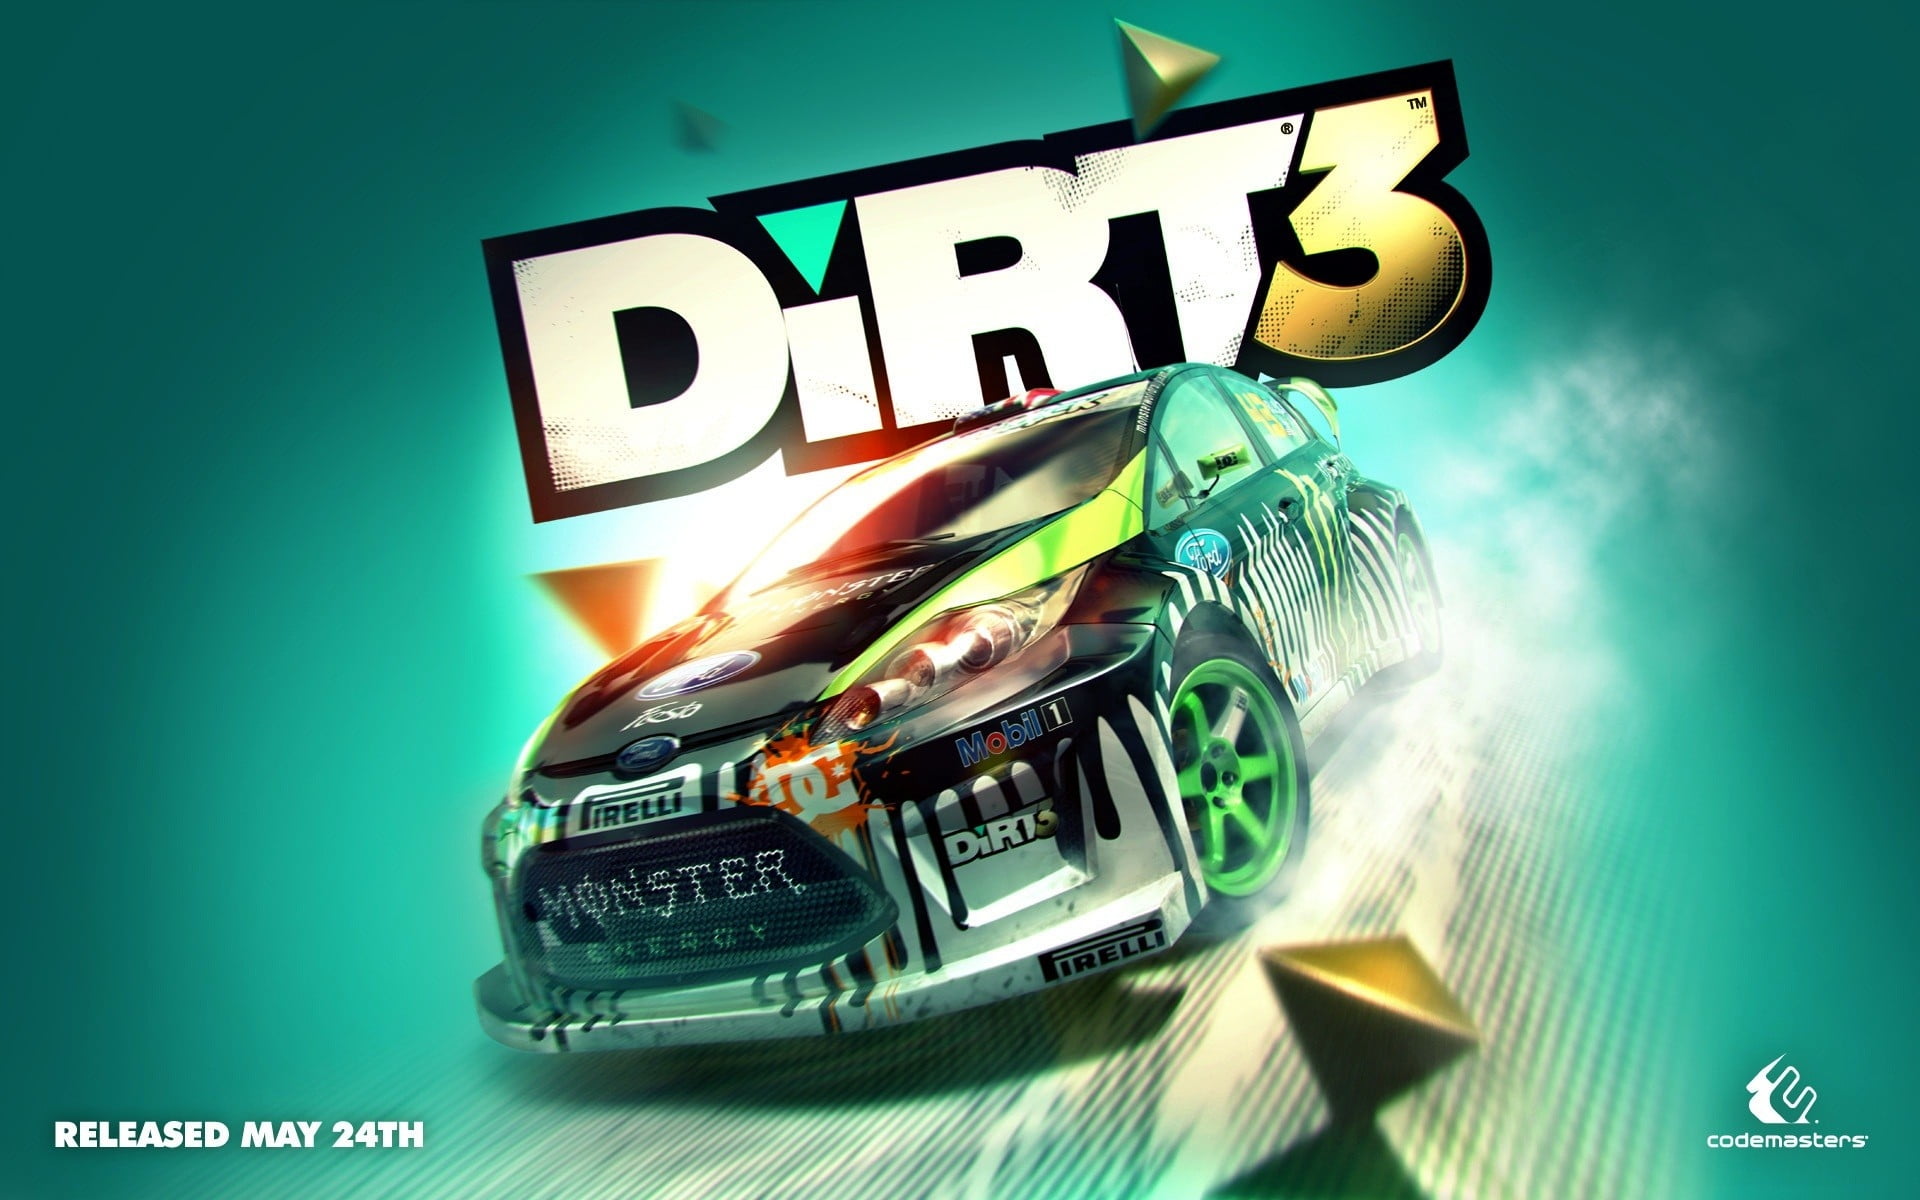 dirt3 game